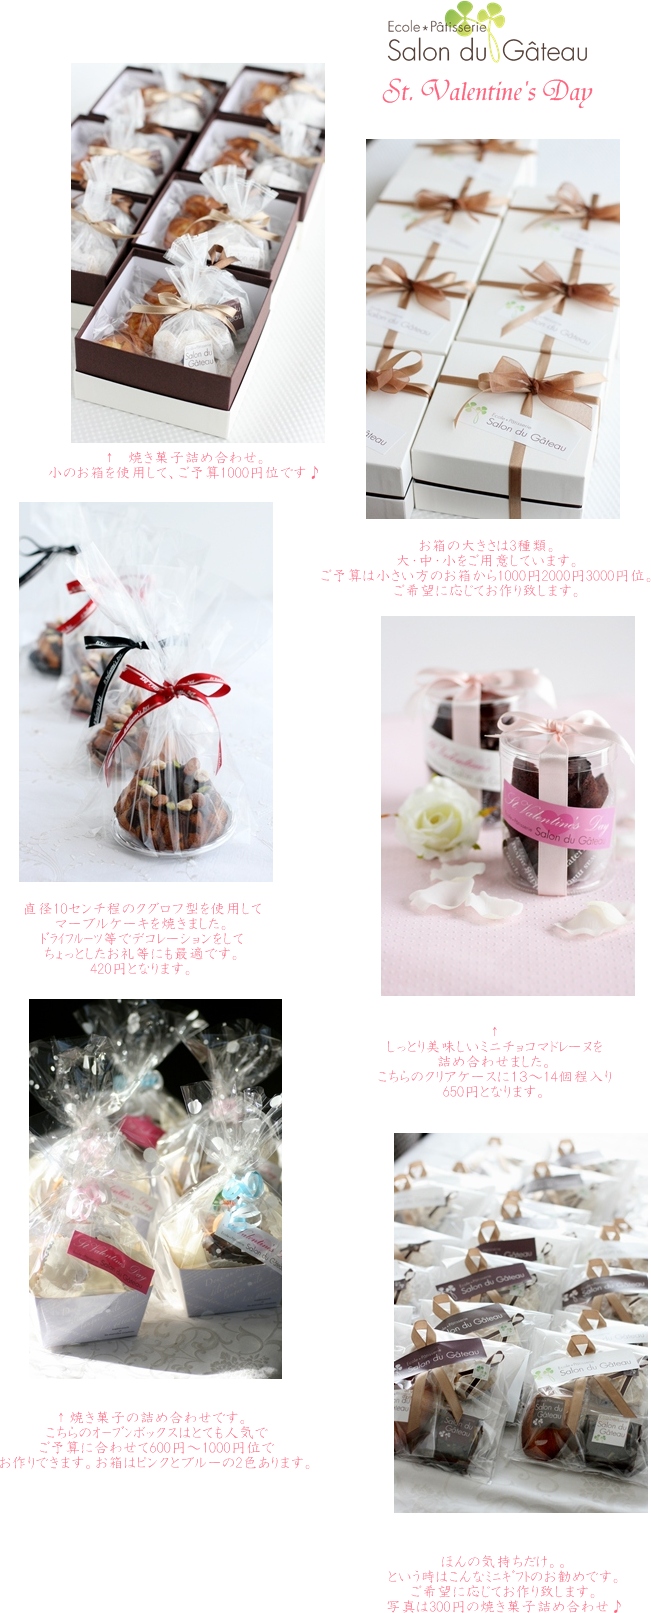 バレンタインの焼き菓子のご注文♪_c0193245_17192286.jpg